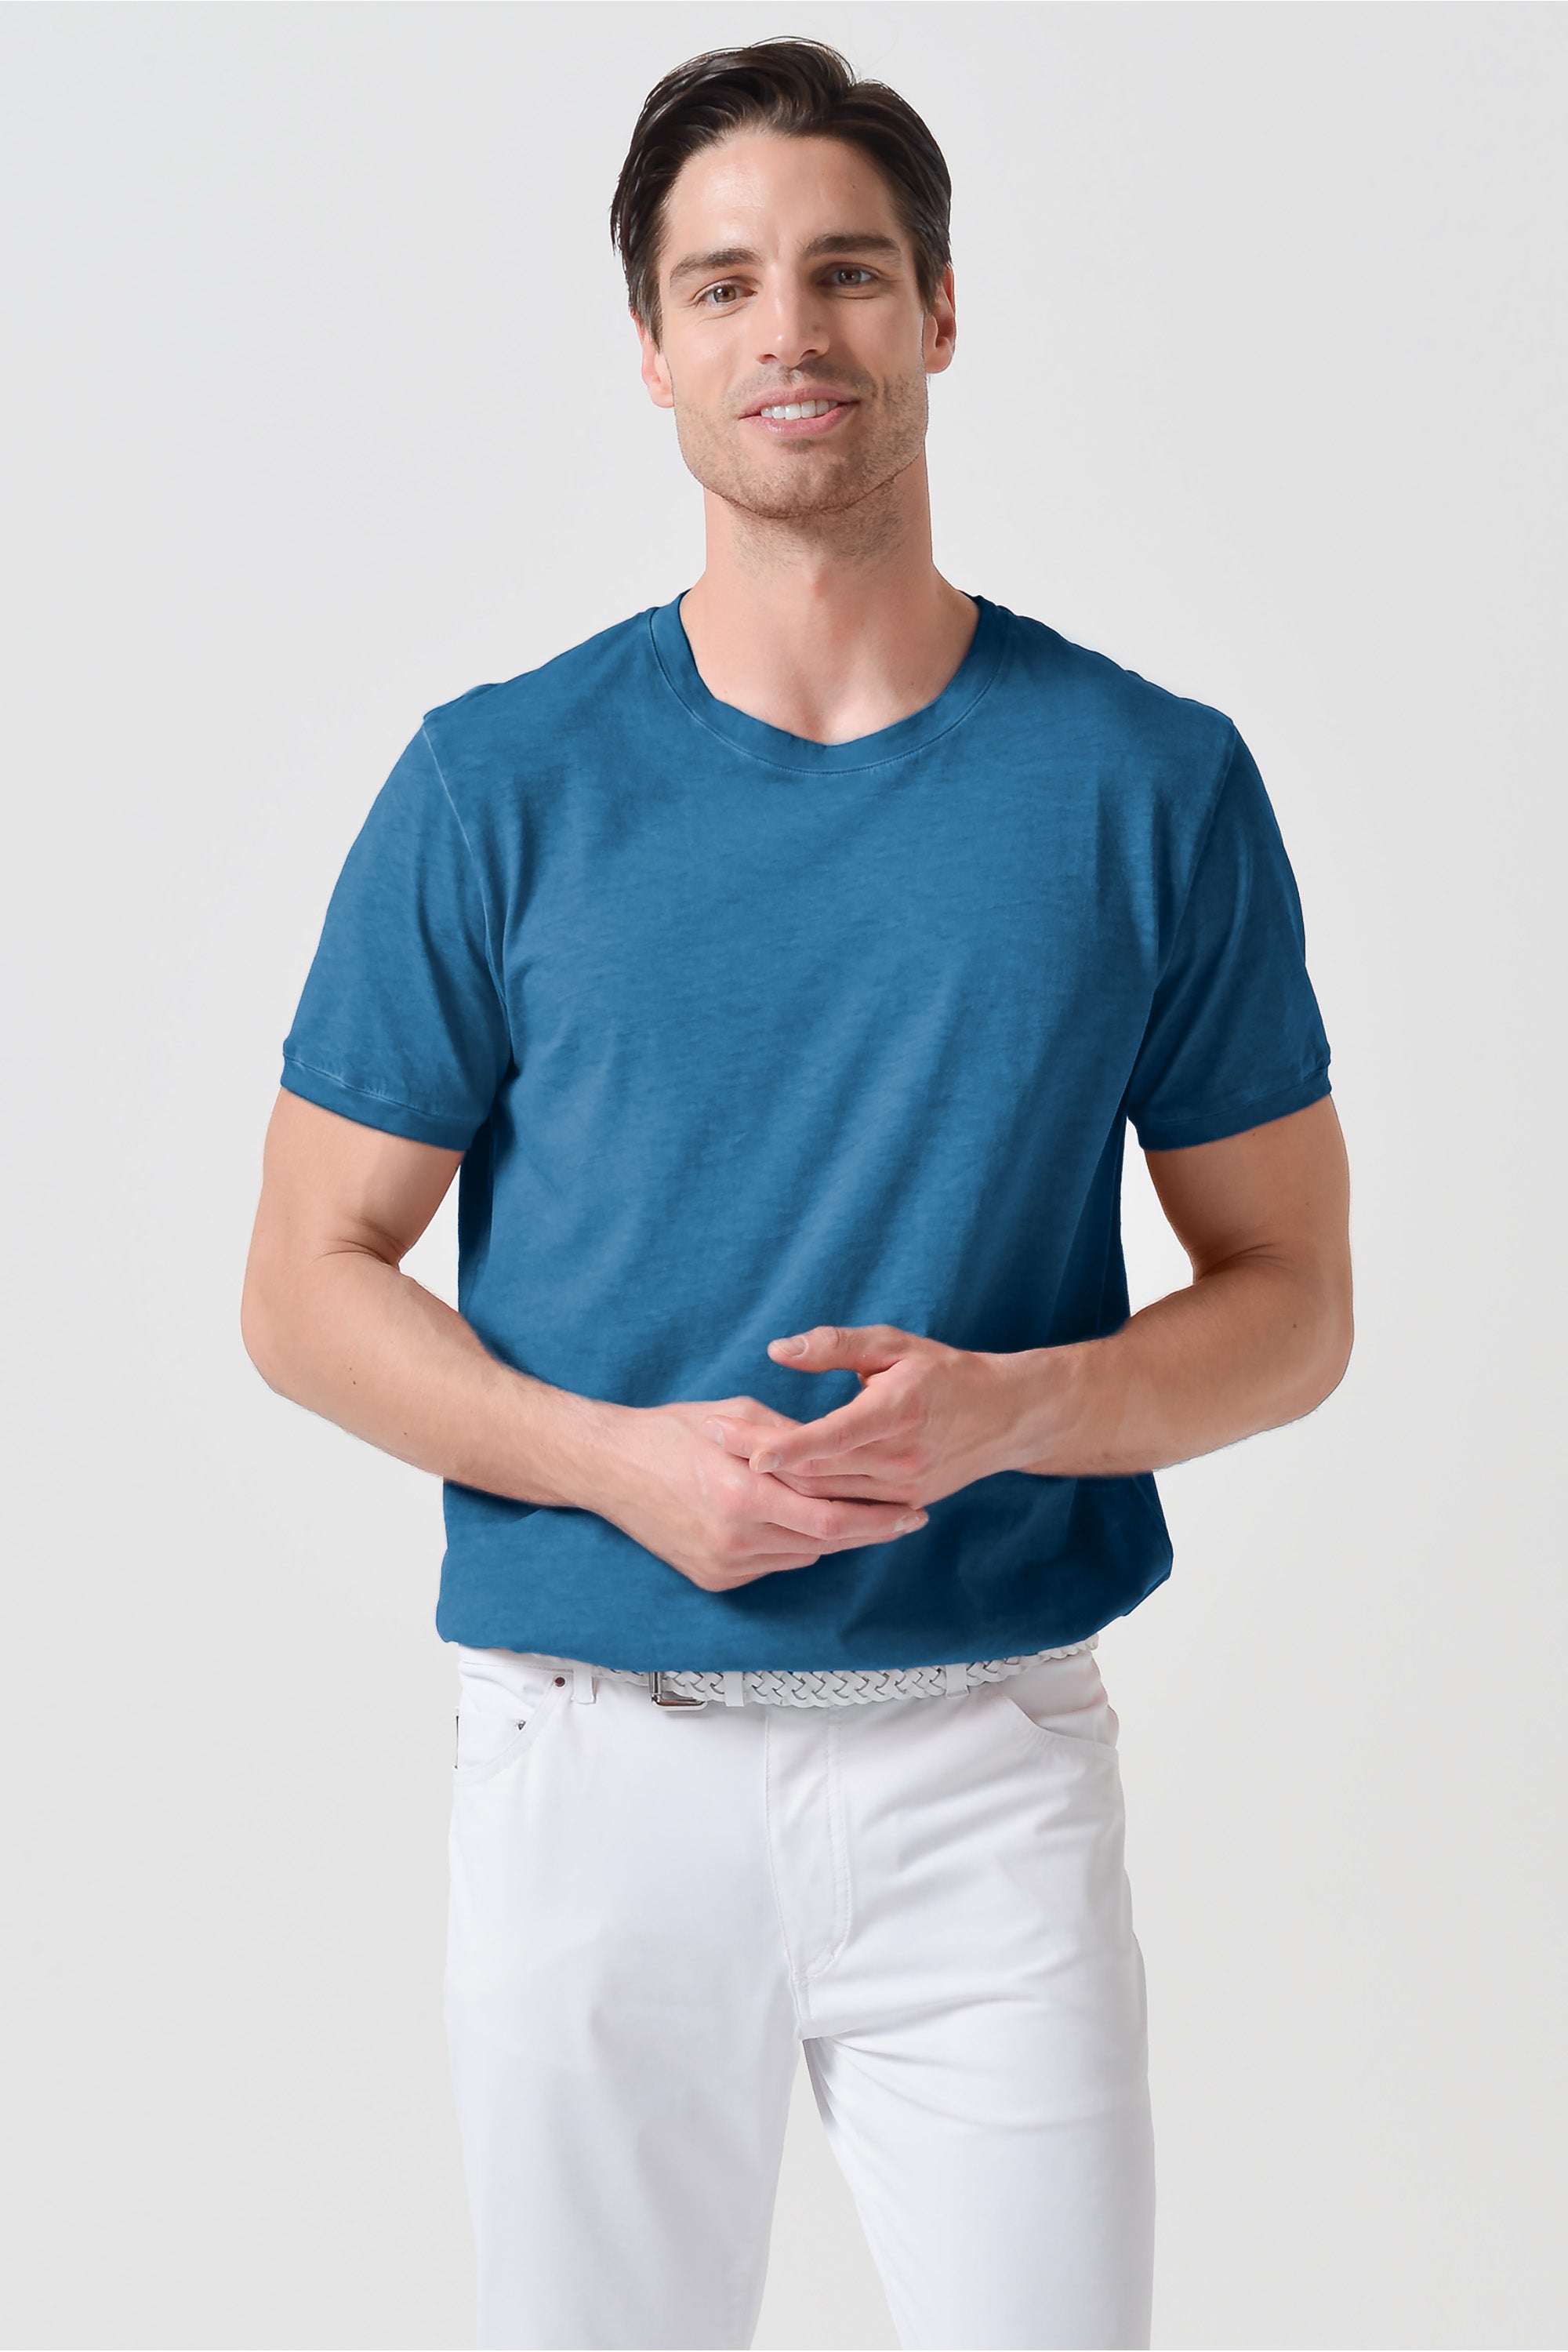 T-shirt smart casual in cotone - Profondo